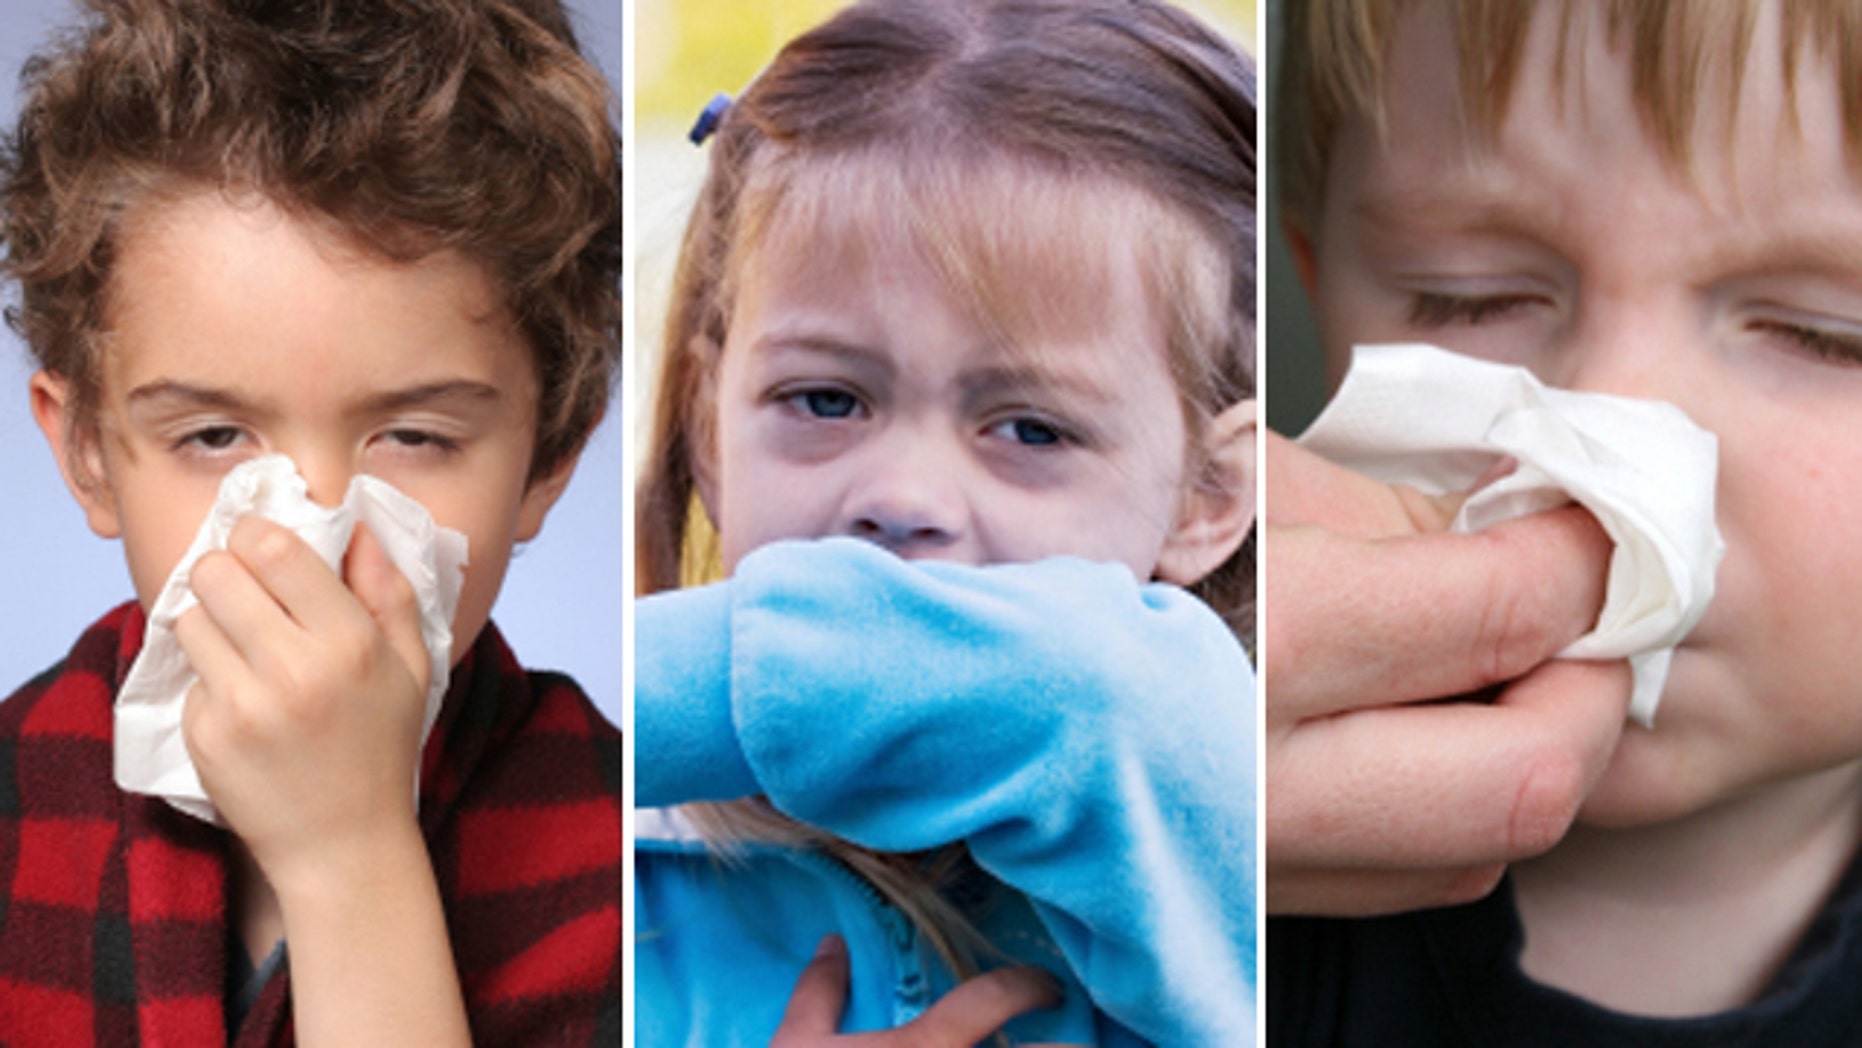 Natural remedies to treat sick kids | Fox News